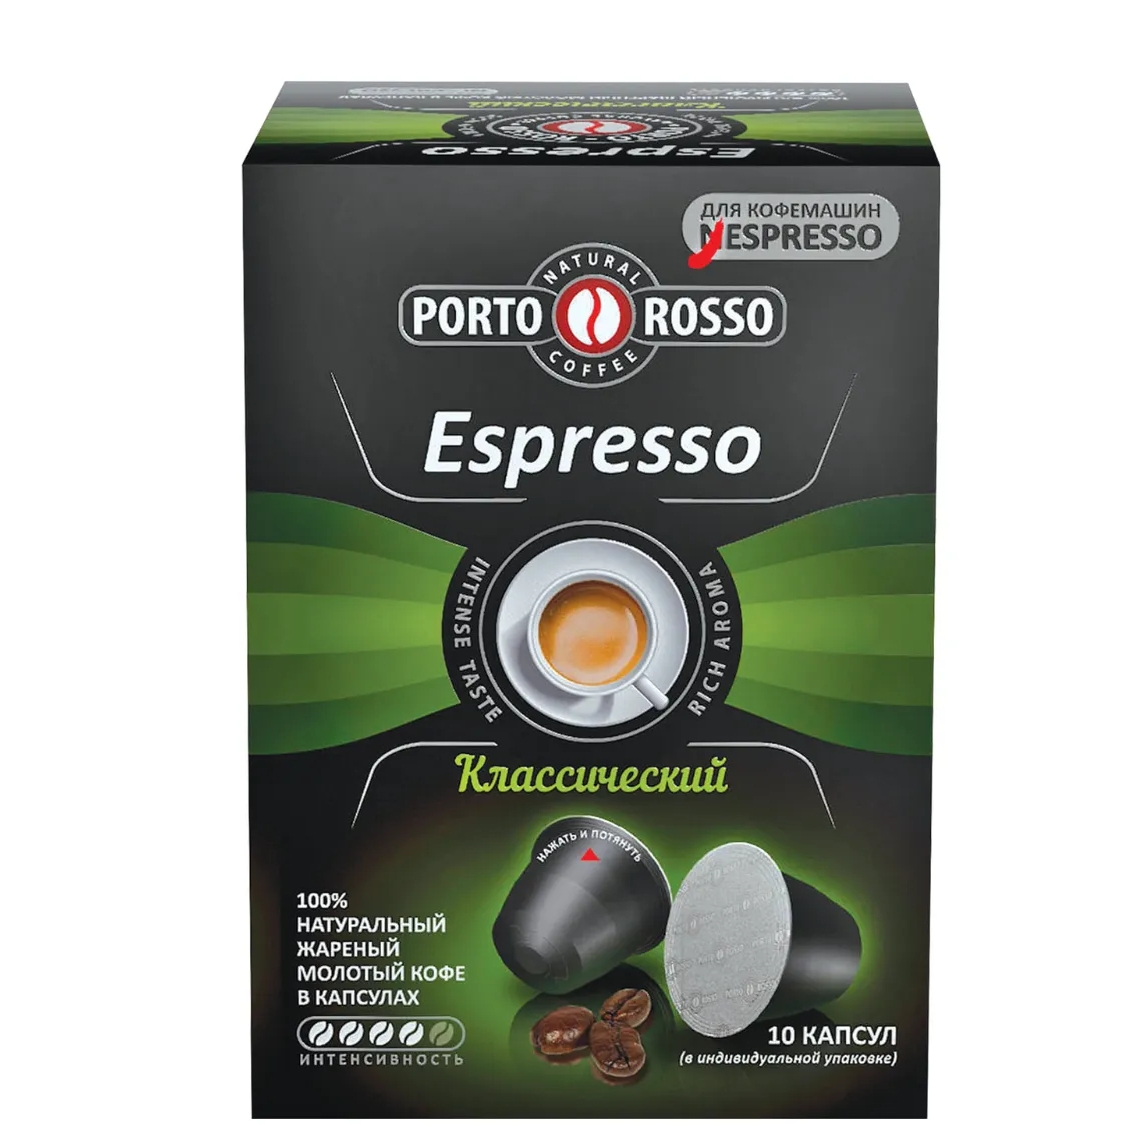 Кофе в капсулах Porto Rosso Espresso Классический, 10х5 г кофе растворимый porto rosso originale 90 г